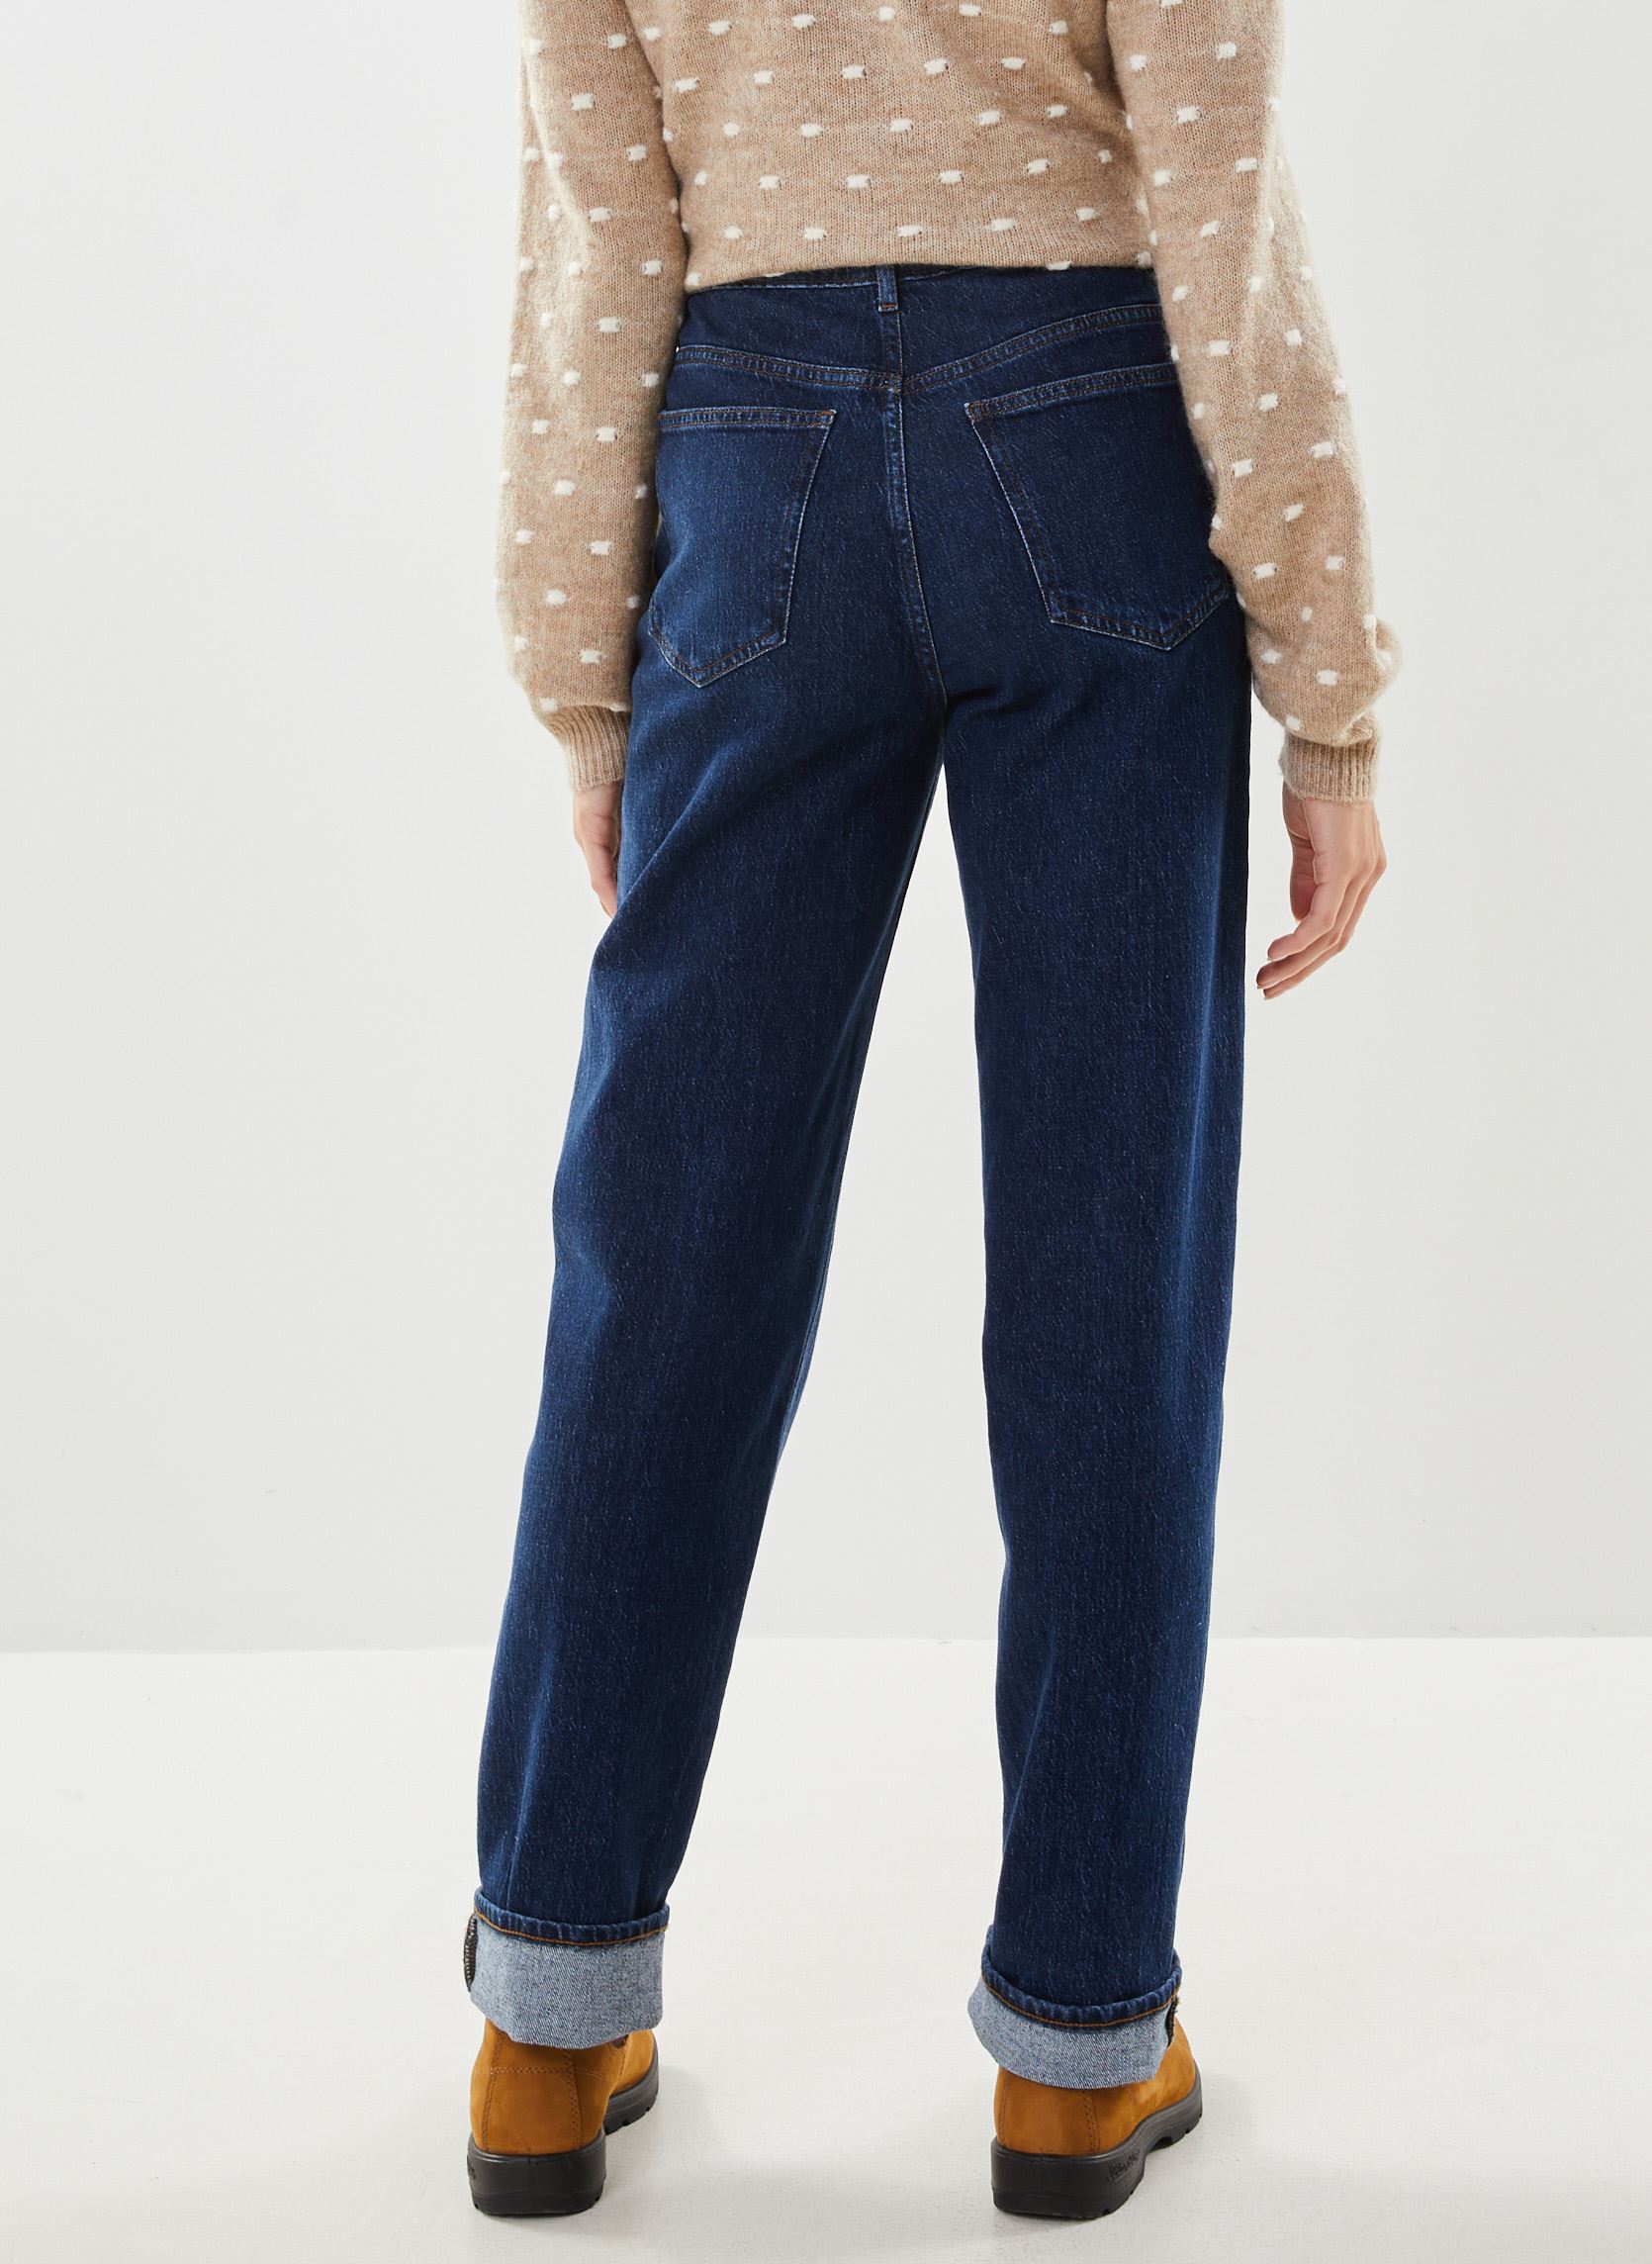 Jeans modelo Kelly con lavado azul oscuro. Marca Vila.